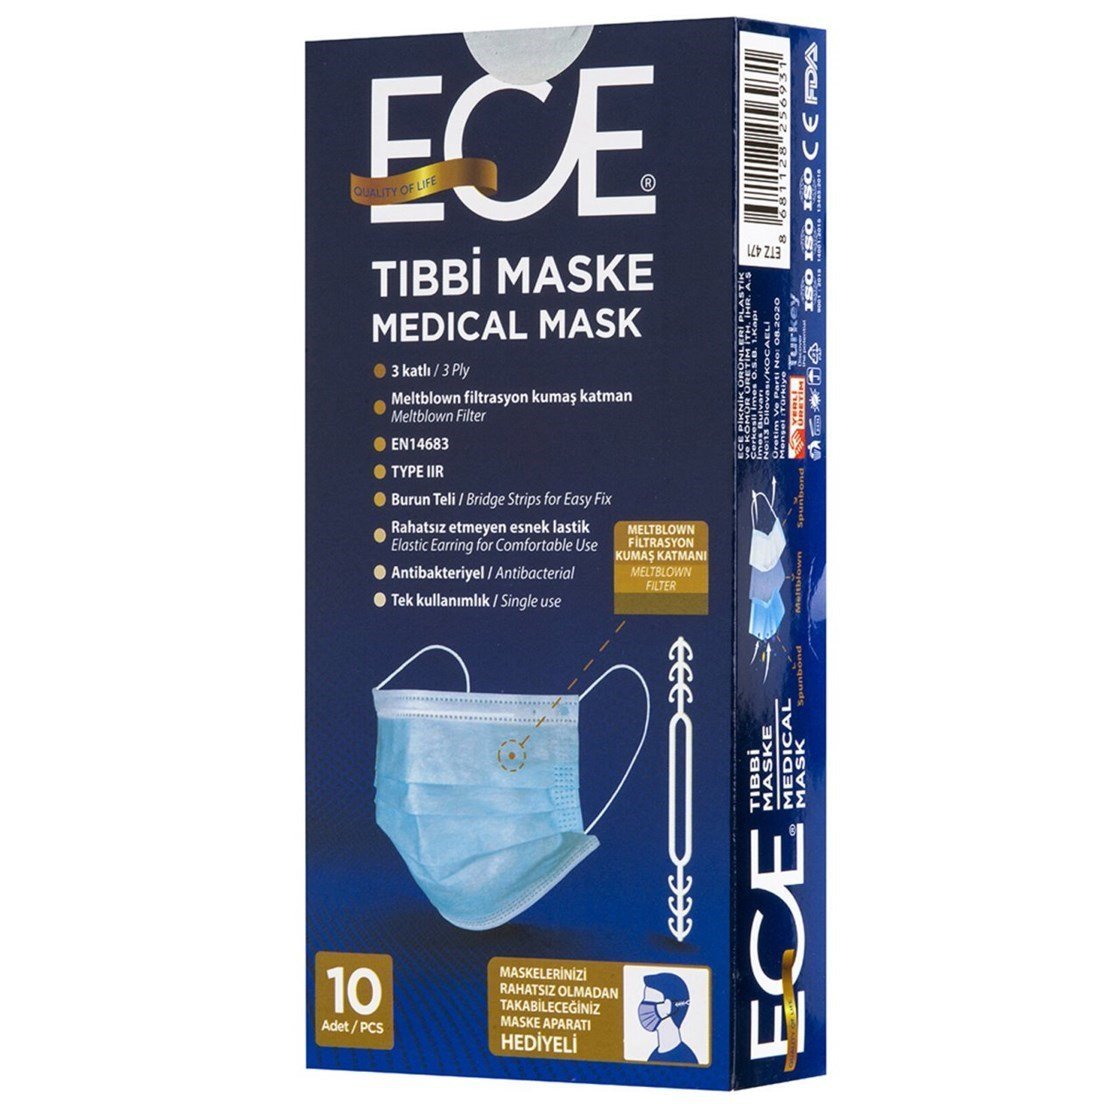 Ece Tıbbi Maske - Meltblown Cerrahi Maske 10 Adet Fiyatları İndirimli |  Dermoailem.com